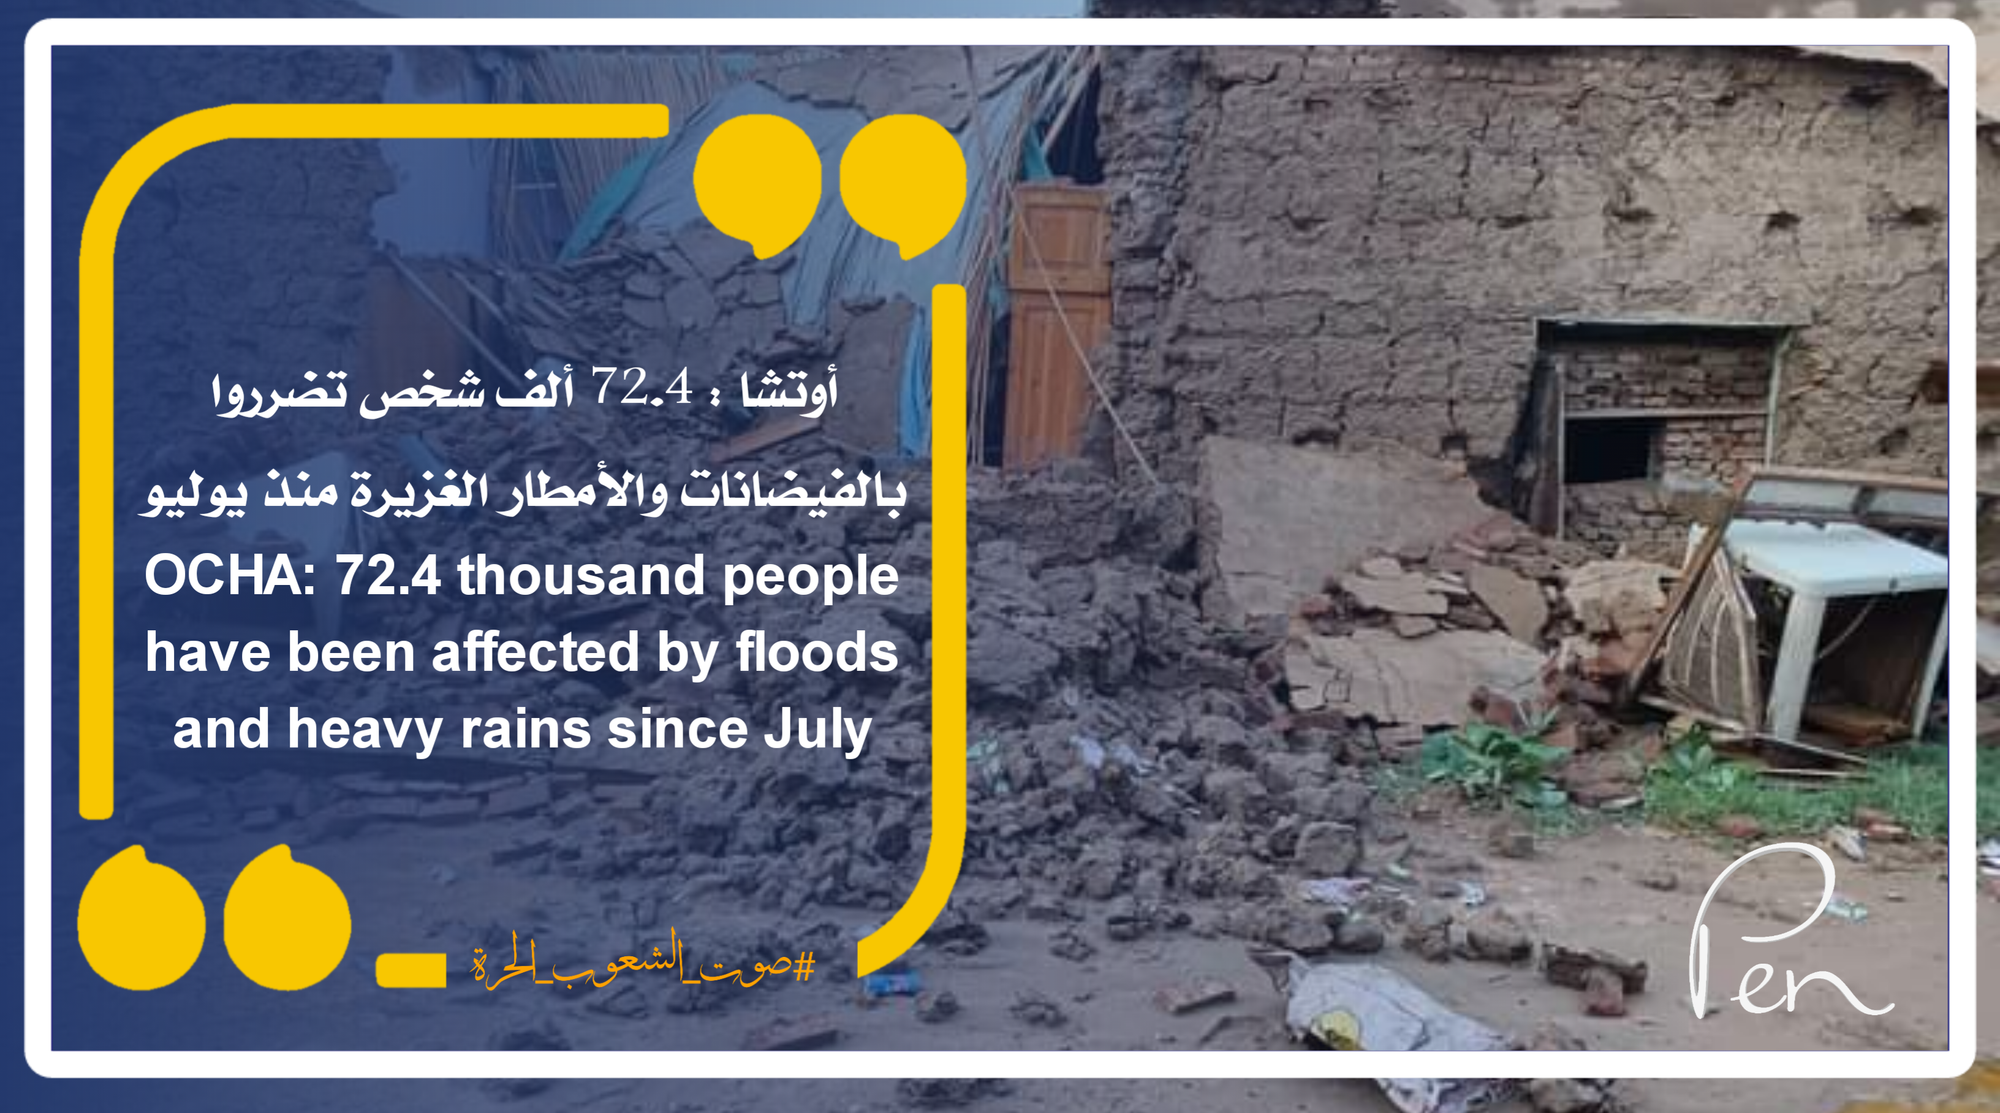 أوتشا : 72.4 ألف شخص تضرروا بالفيضانات والأمطار الغزيرة منذ يوليو